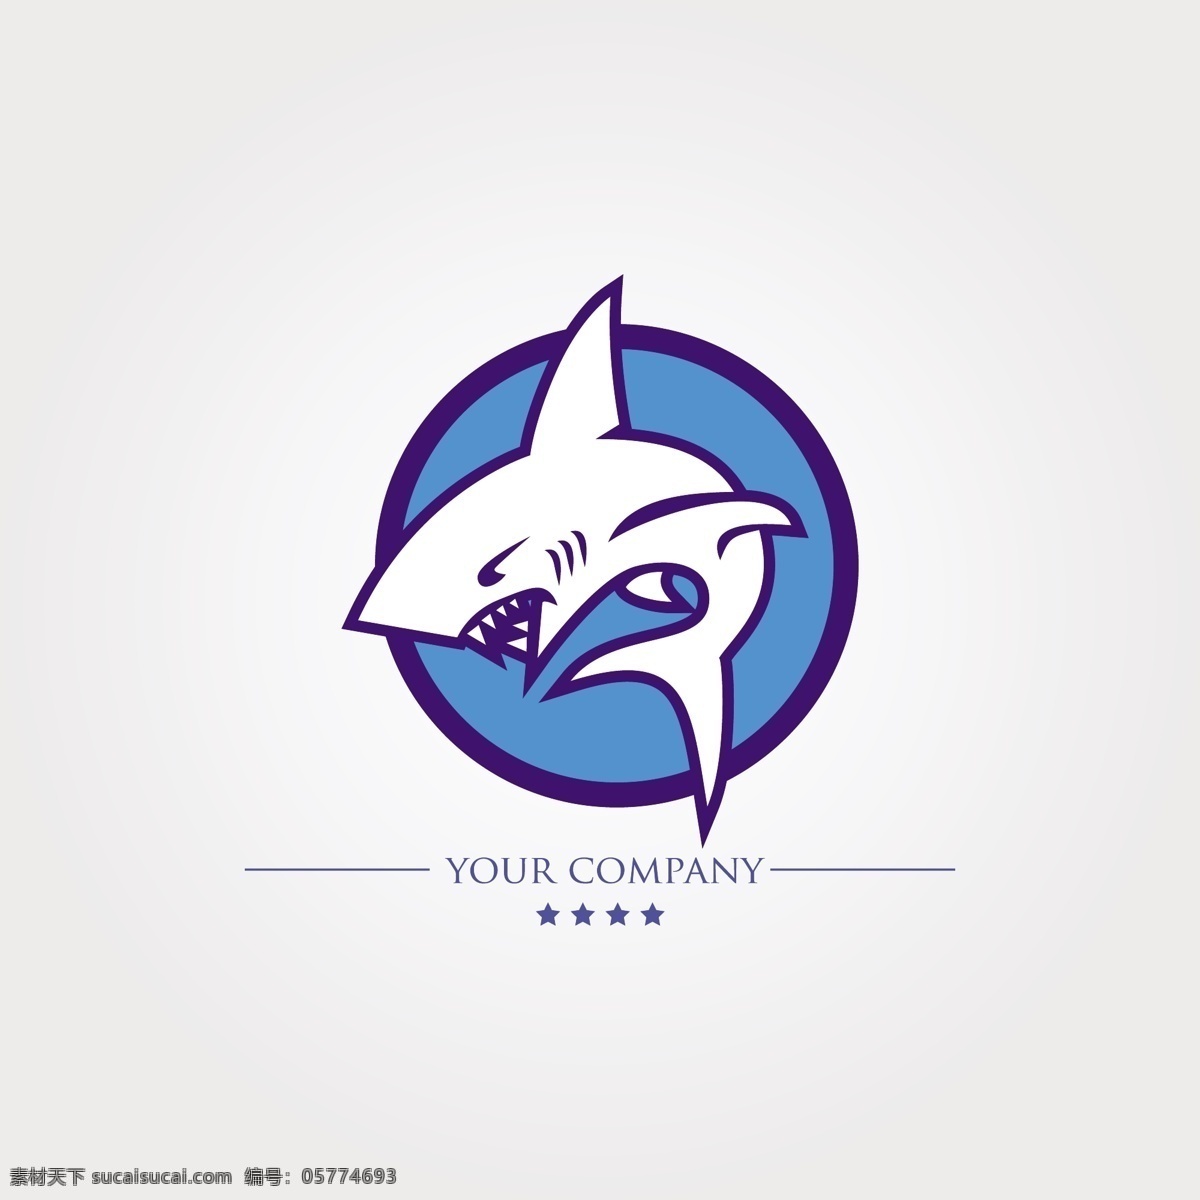 创意 蓝色 鲨鱼 logo 矢量 蓝色圆形 大白鲨 动物 凶猛 创意logo 行业logo 标志设计 logo设计